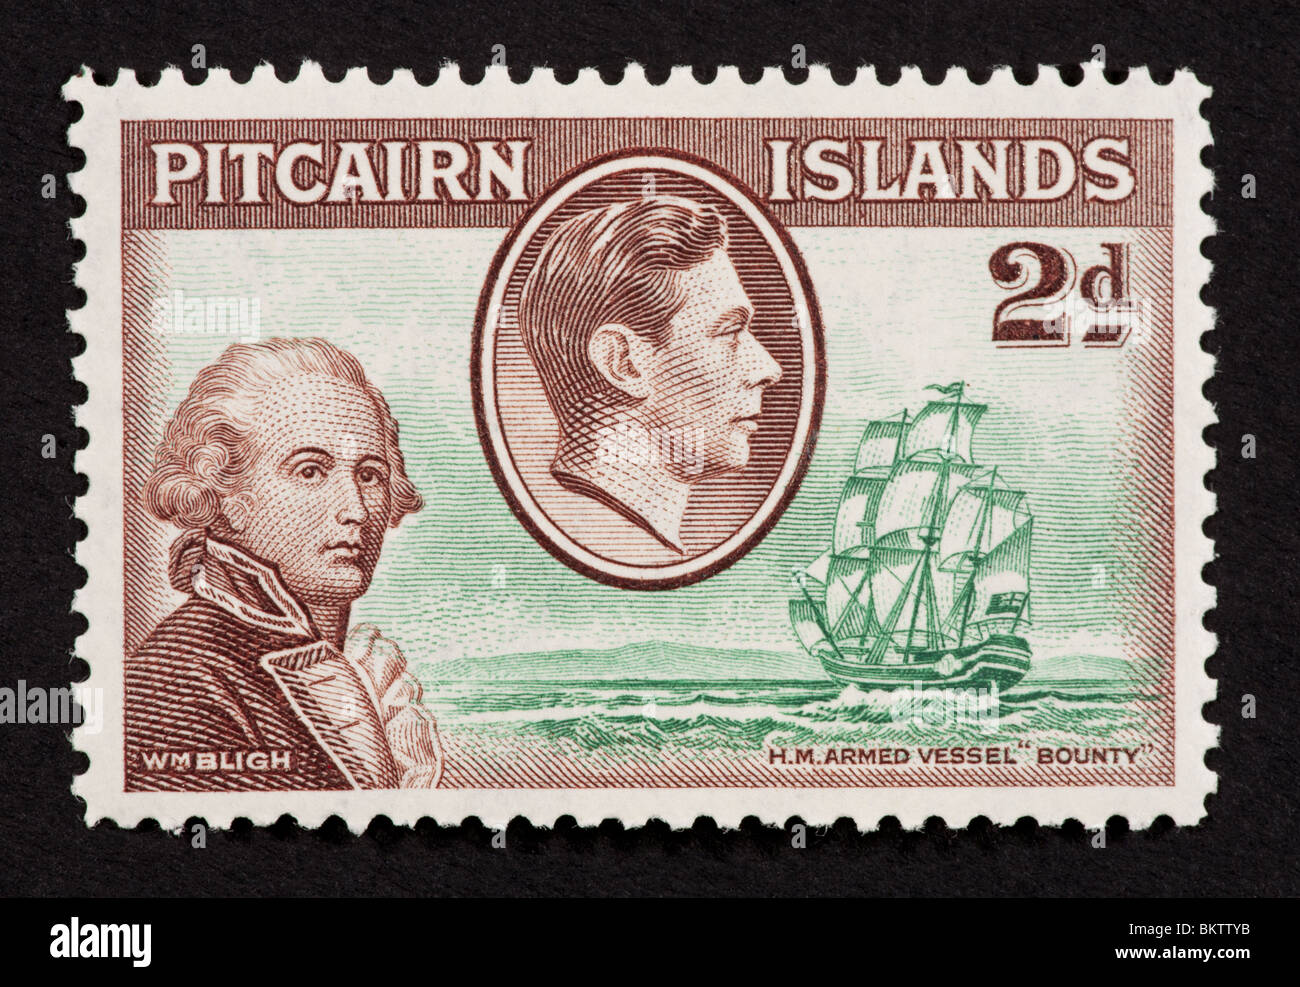 Francobollo da Isole Pitcairn raffiguranti William Bligh, l'HMS Bounty e King George VI. Foto Stock